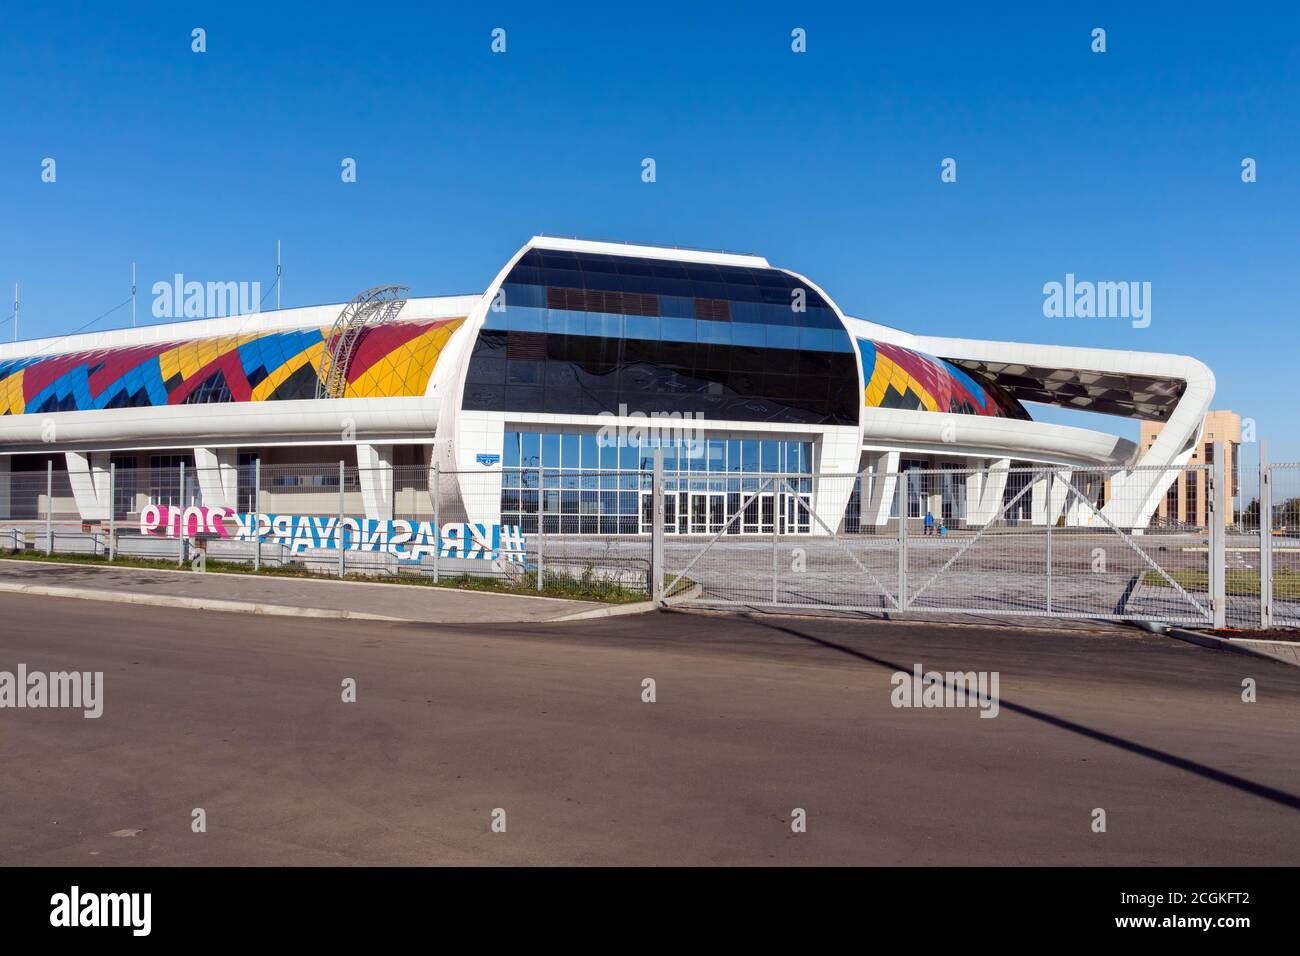 Sportpalast Crystal Ice Arena auf Partizana Zheleznyaka Straße der Stadt Krasnojarsk, für die Winter-Universiade 2019 gebaut. Stockfoto